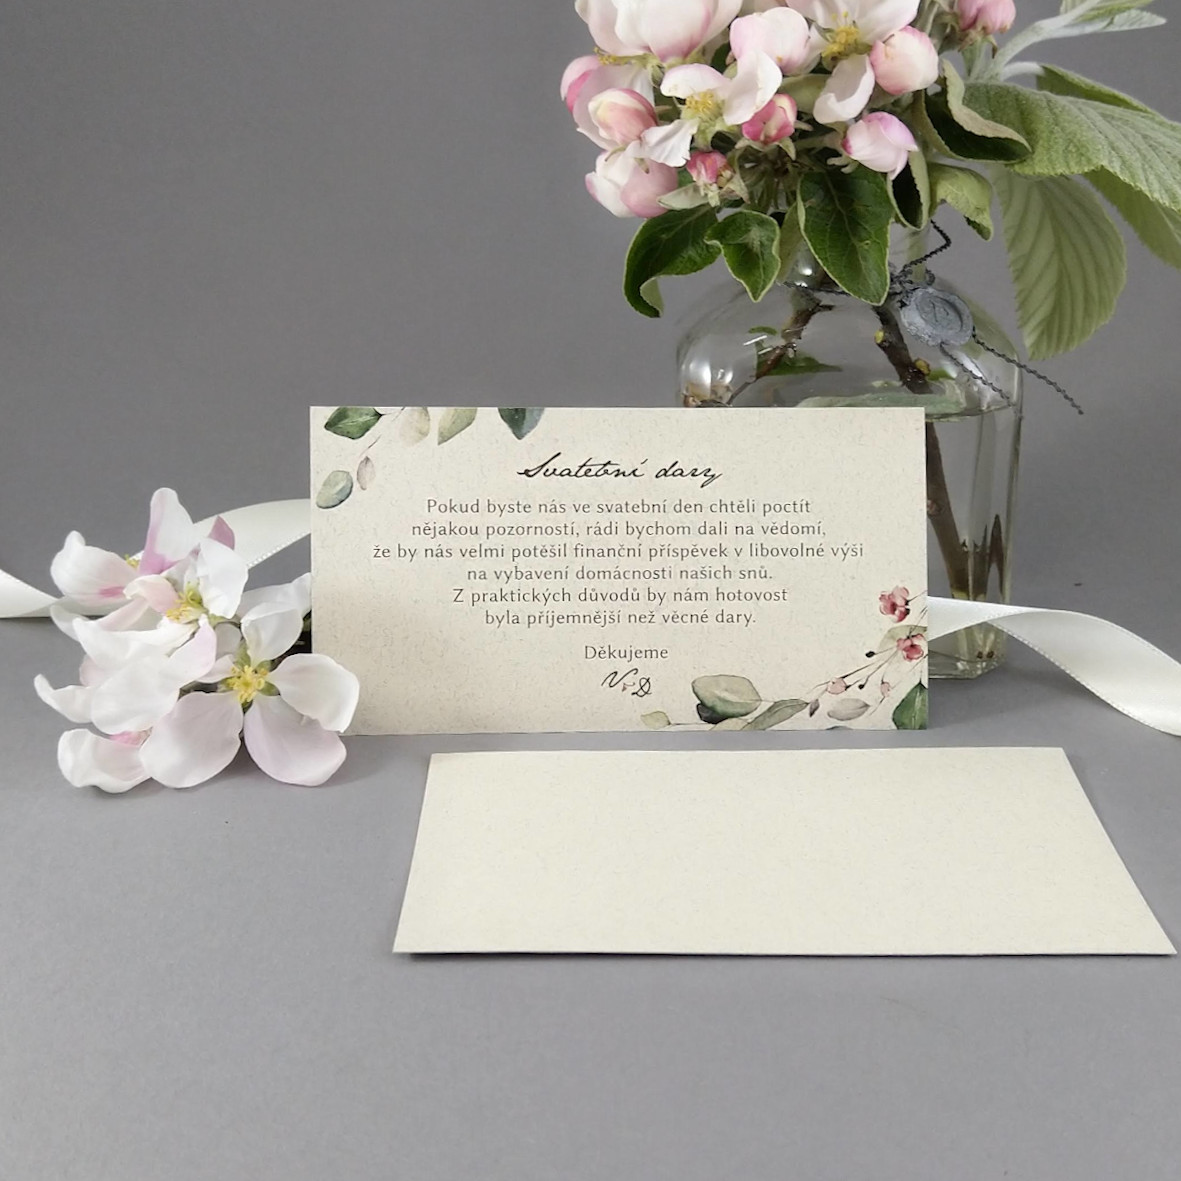 Pozvánka, informační karta – s motivem lístků a bordó květů, formát 120 × 65 mm, jednostranná